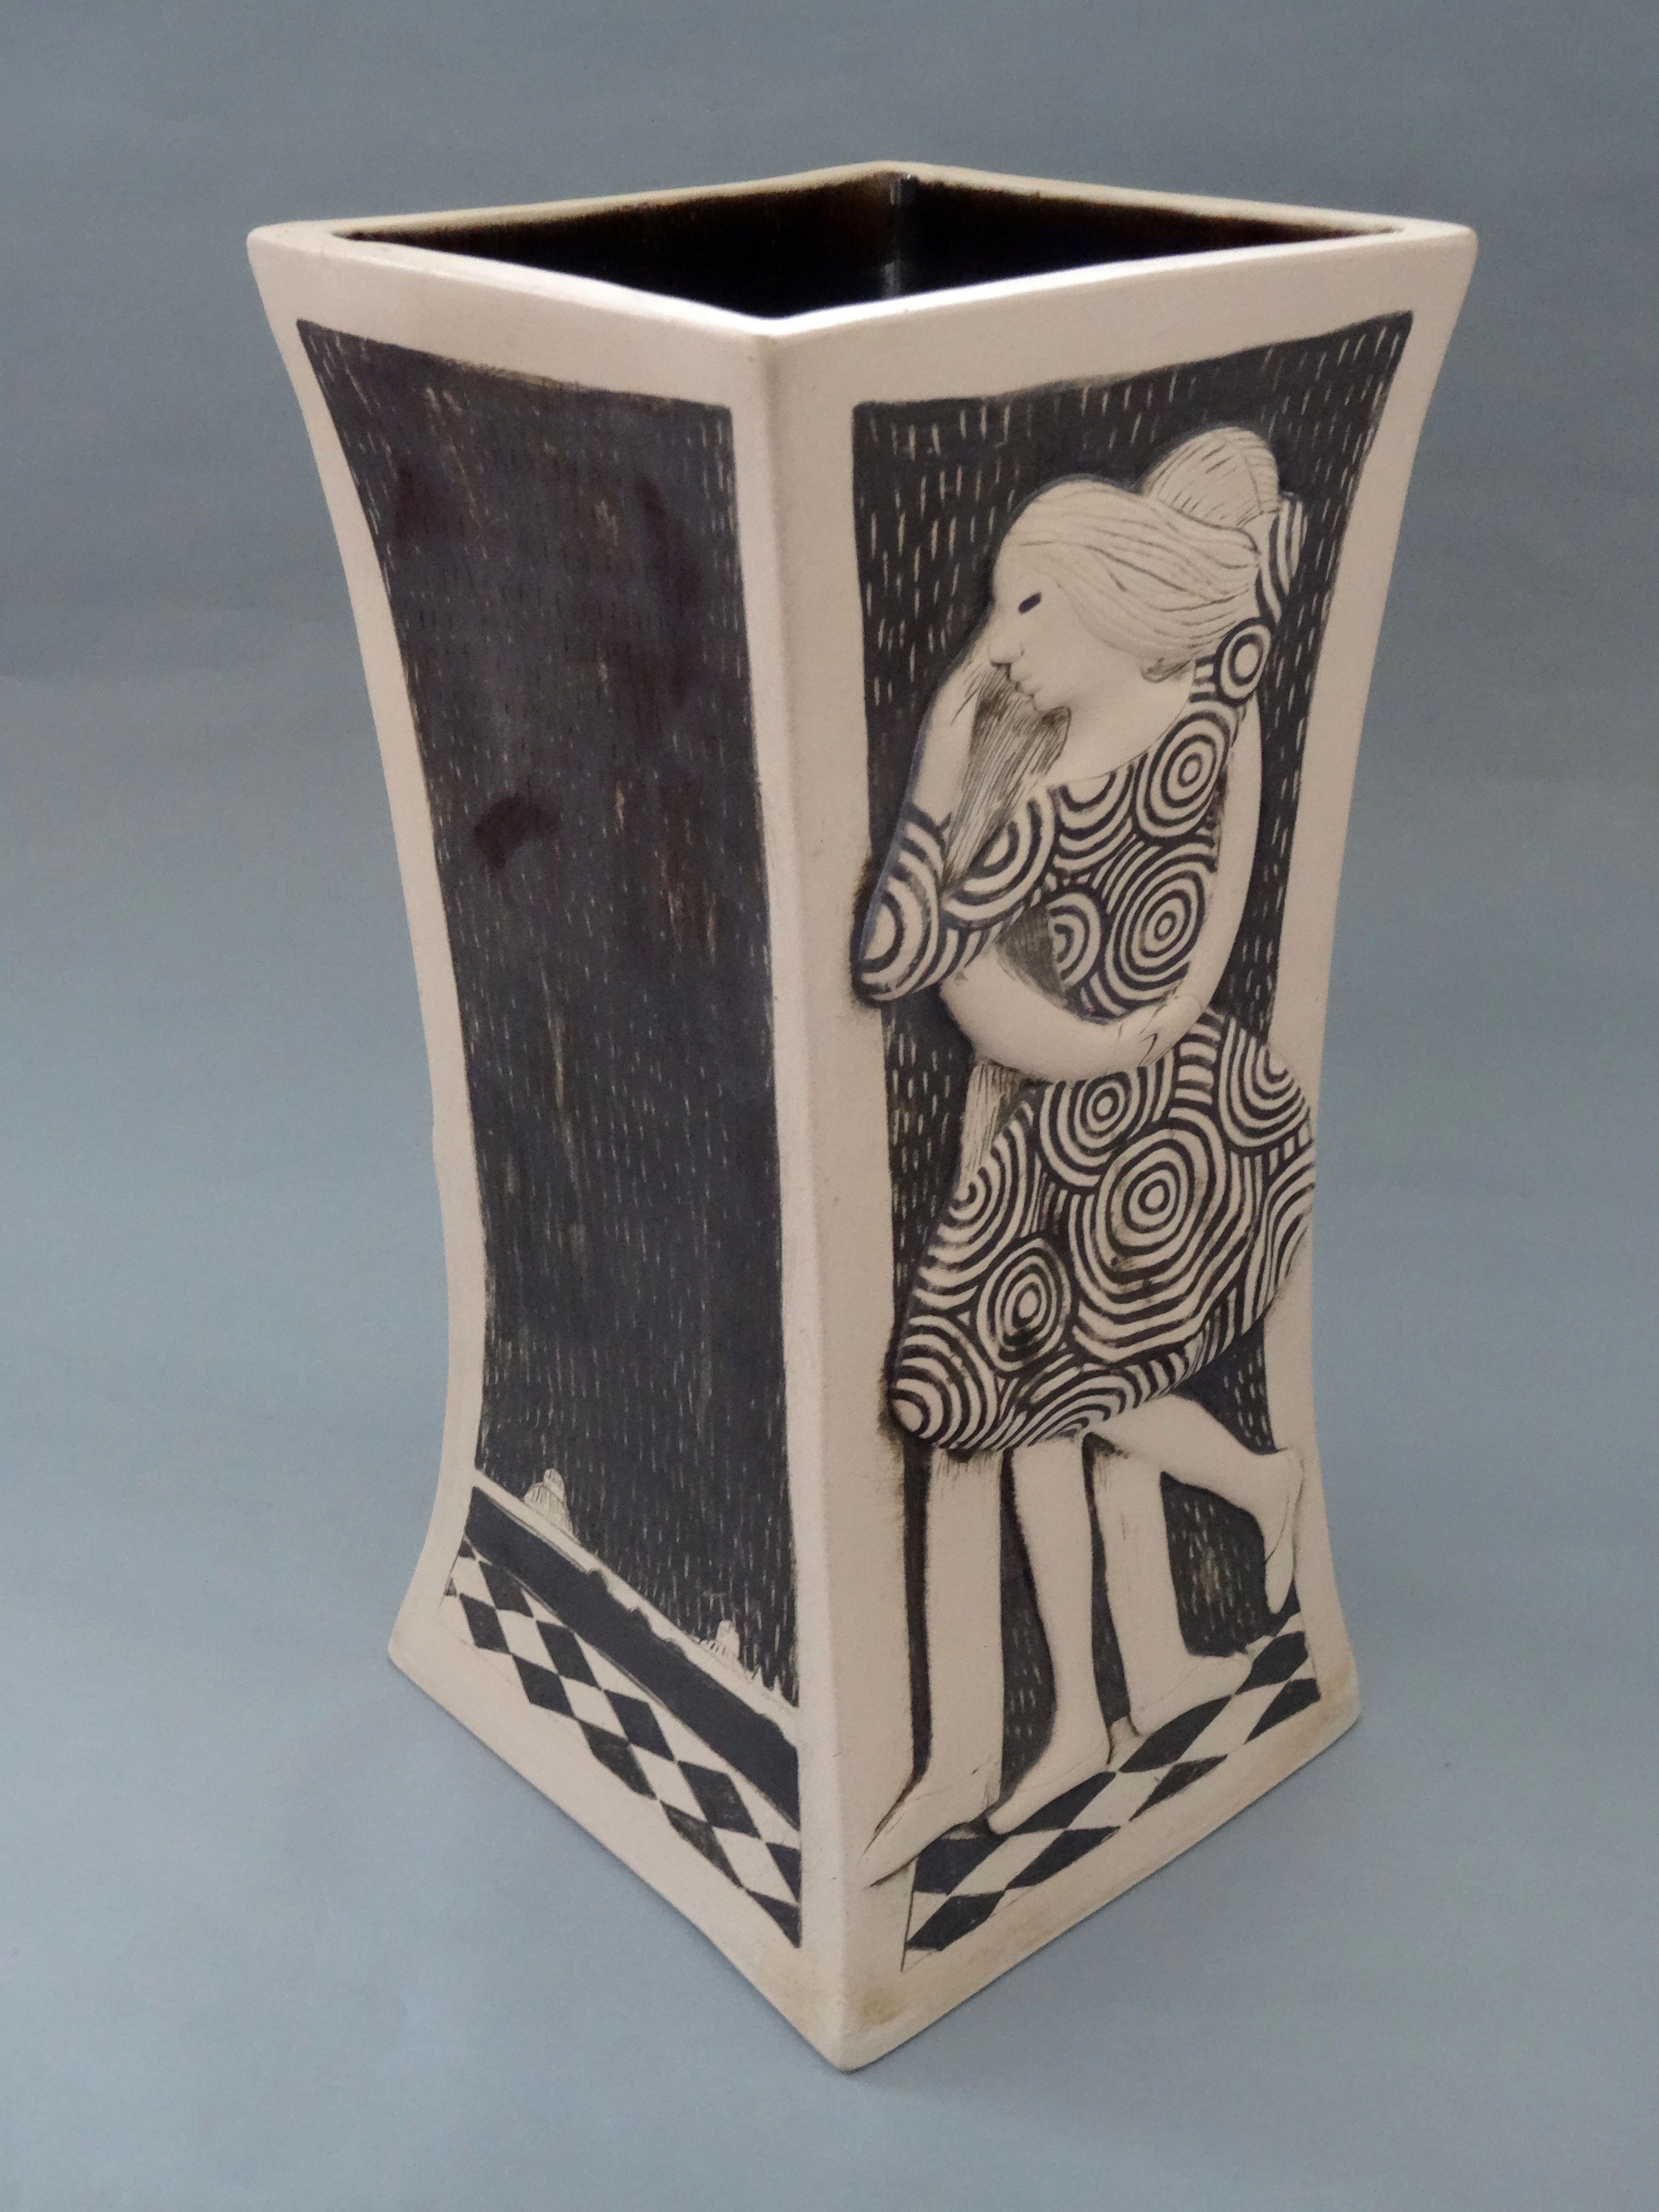 Vase carré « Couple »

2012. grès, hauteur 28,5 cm

Le vase carré 